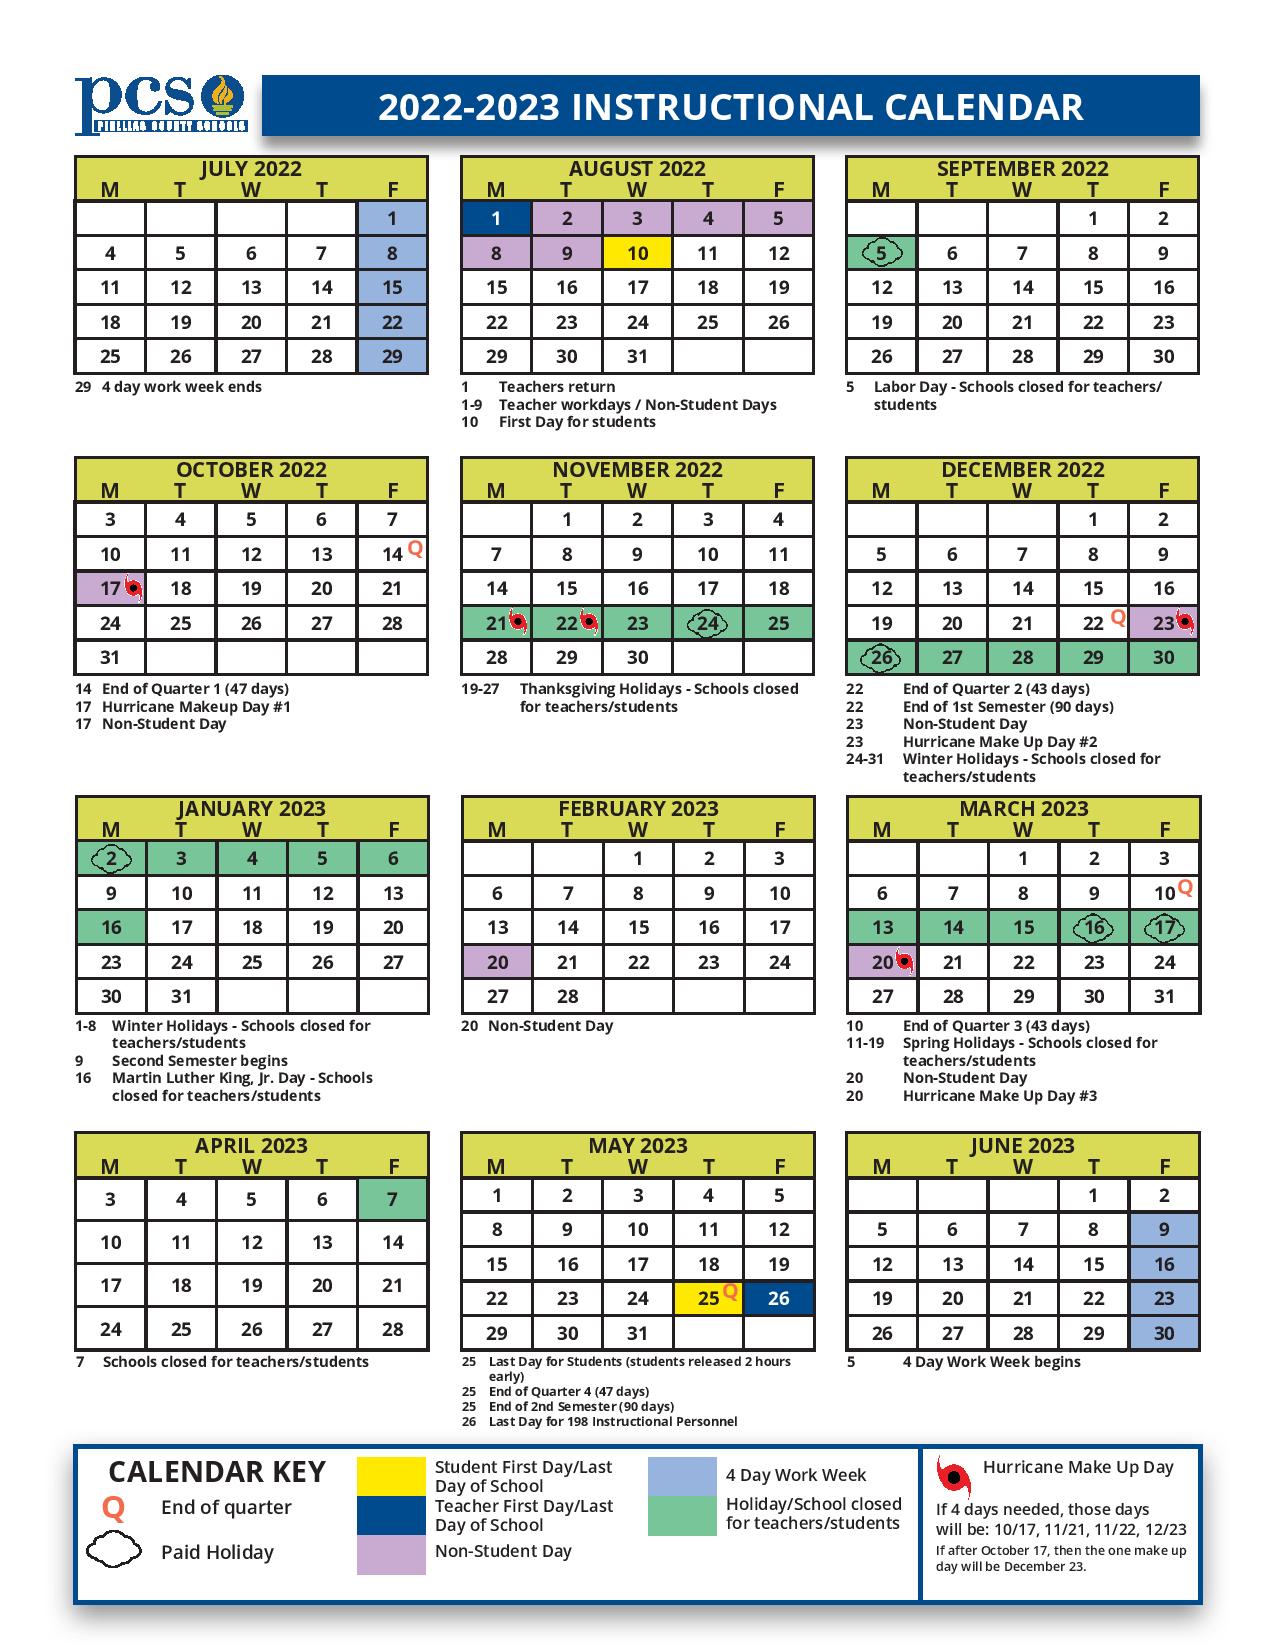 Pinellas County Schools Calendar 2022-2023 in PDF Format